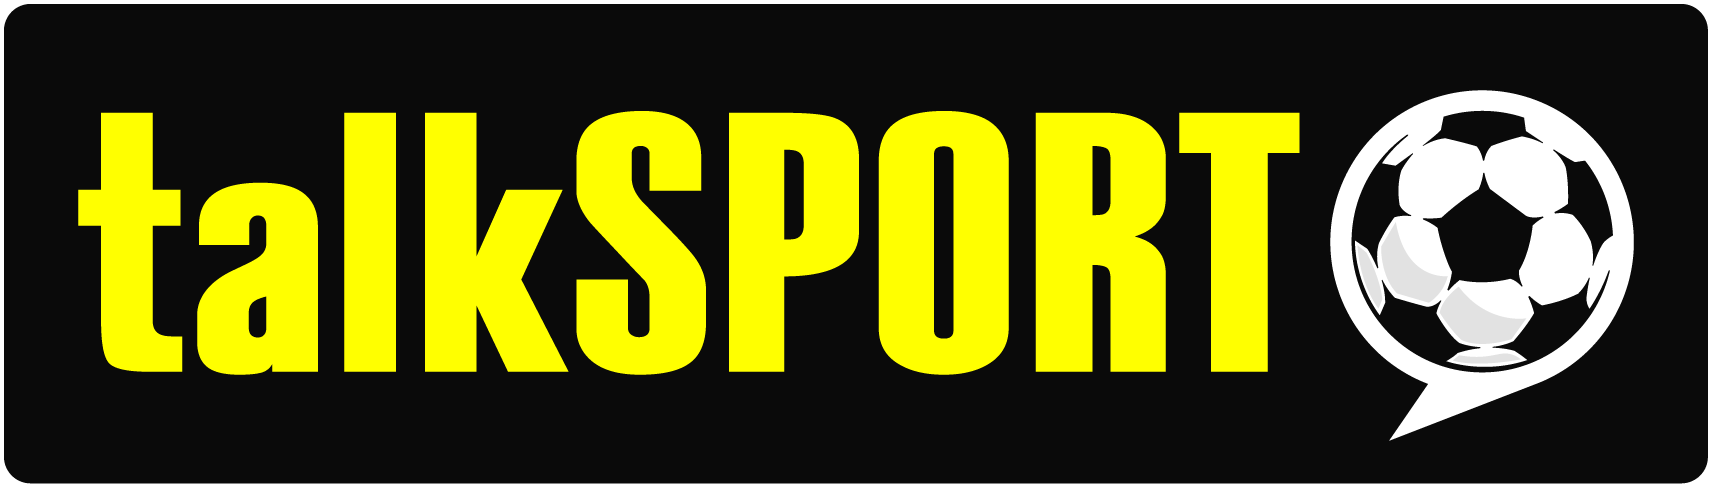 talkSPORT Logo